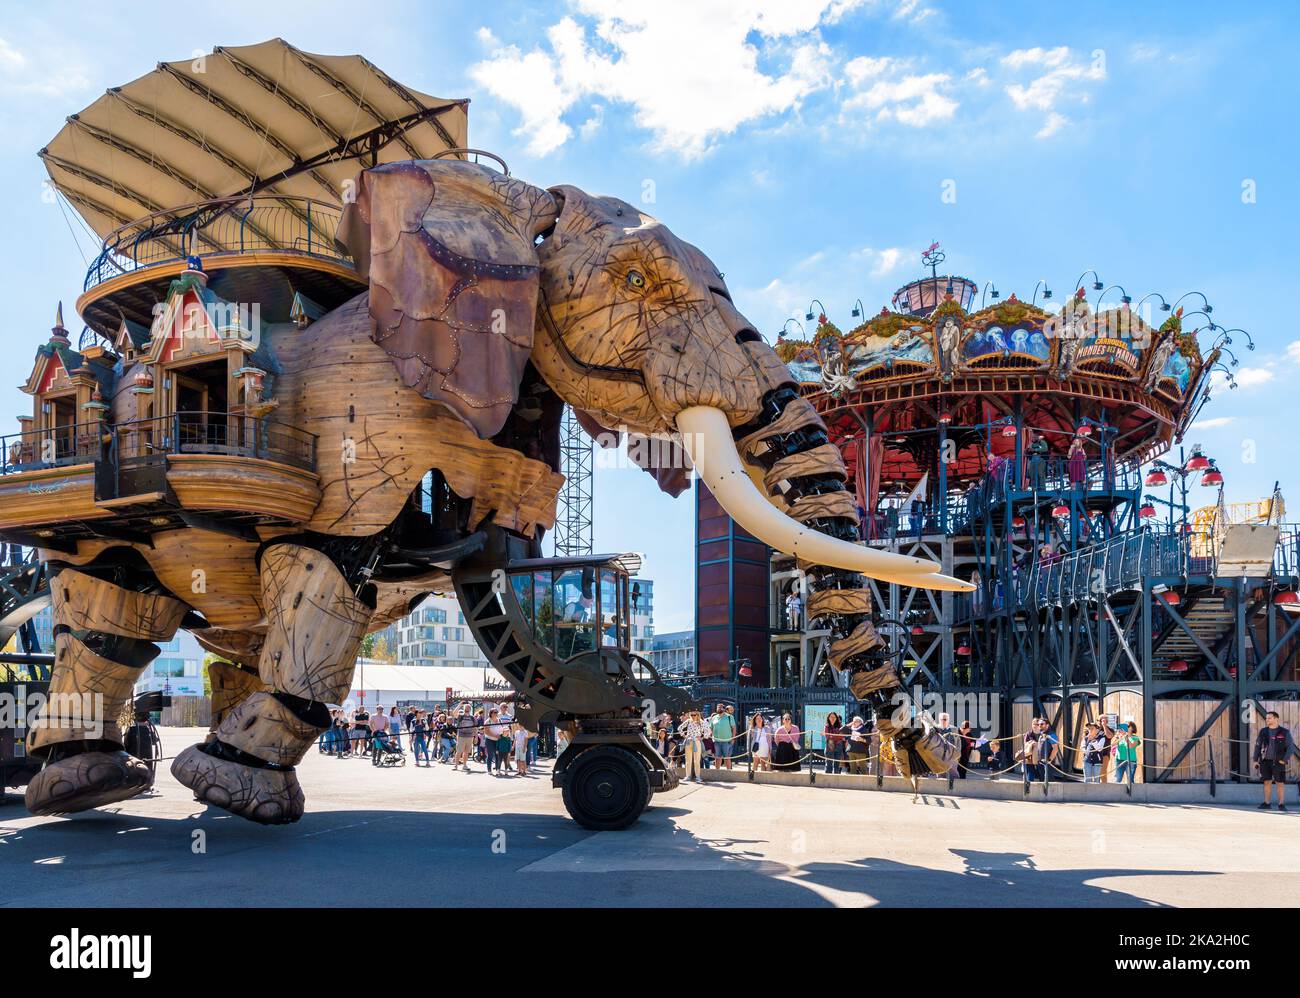 La marionnette géante du Grand éléphant, qui fait partie des machines de l'attraction touristique de l'île de Nantes, en face du carrousel des mondes marins. Banque D'Images